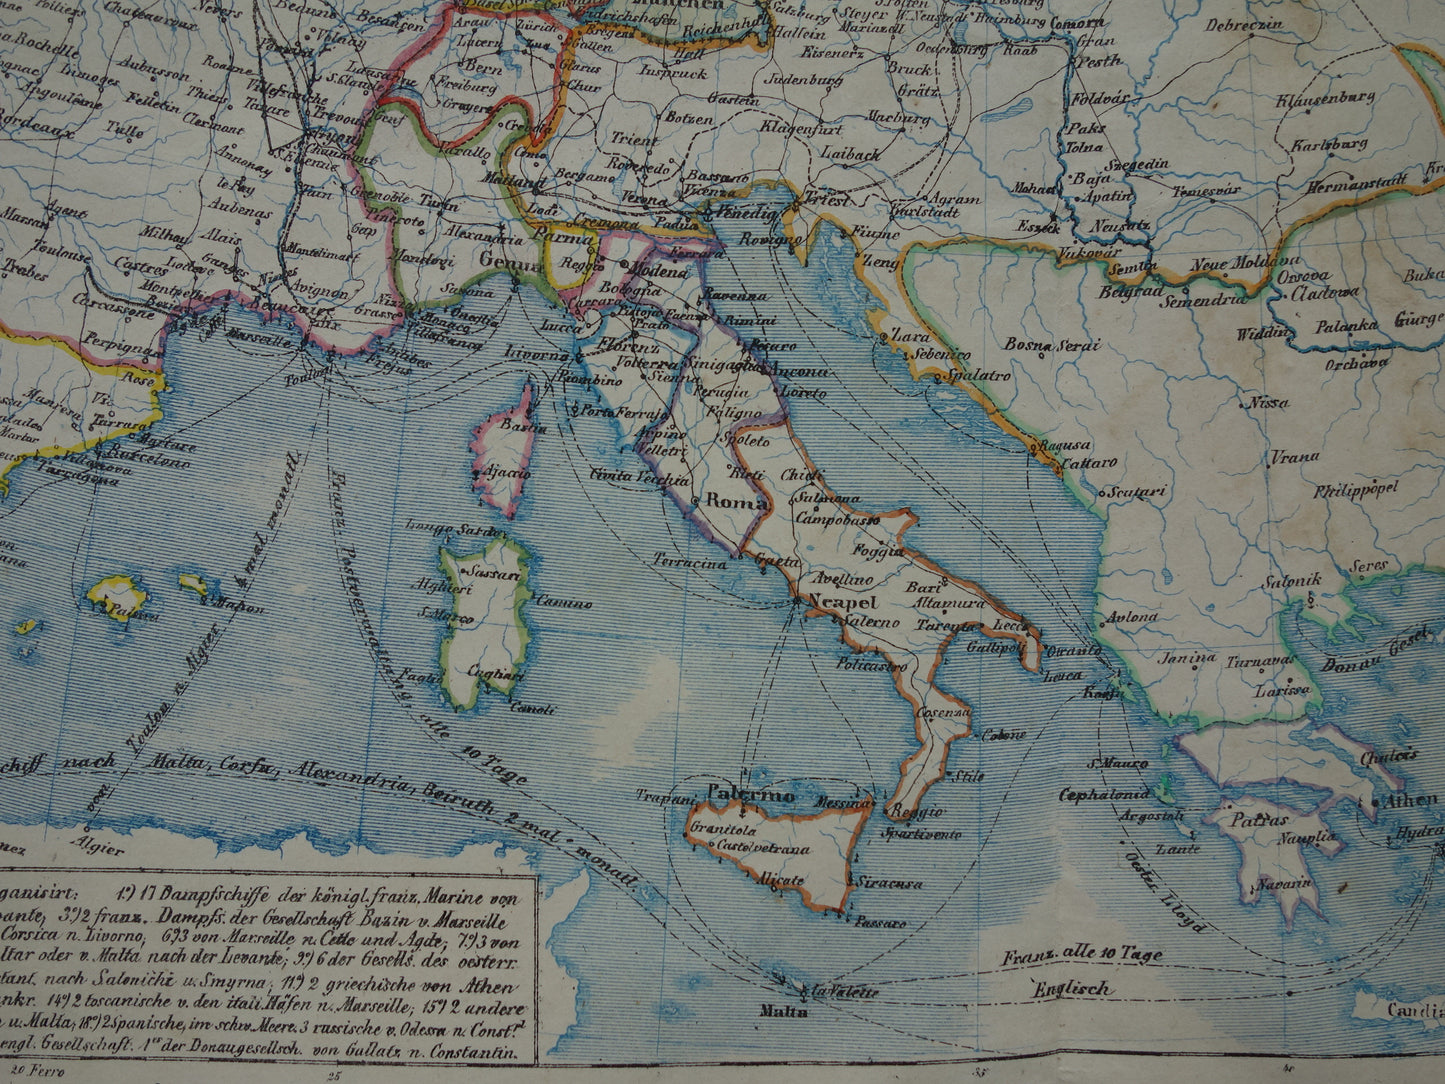 EUROPA grote oude economische kaart van Europa uit 1840 originele antieke landkaart Europees continent economie handel vintage kaarten